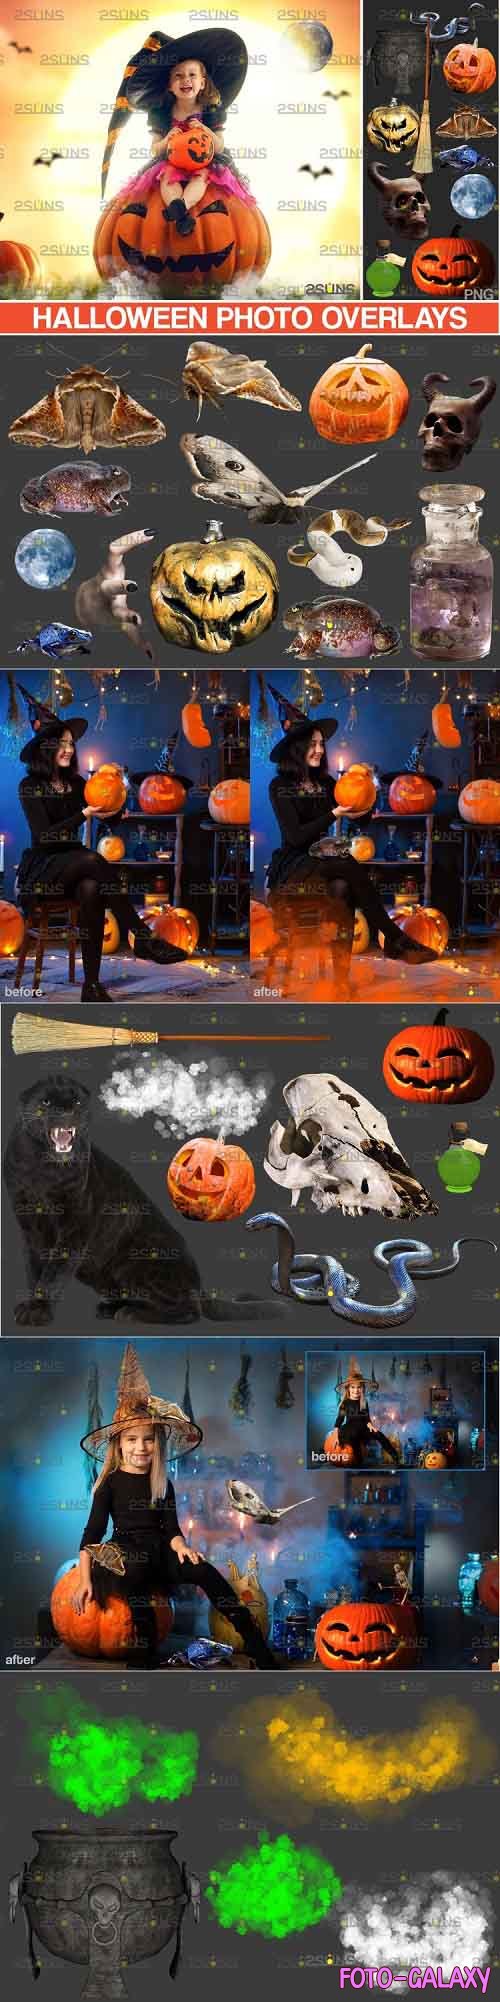 Photoshop overlay smoke bomb overlay, pumpkin overlays - 981851